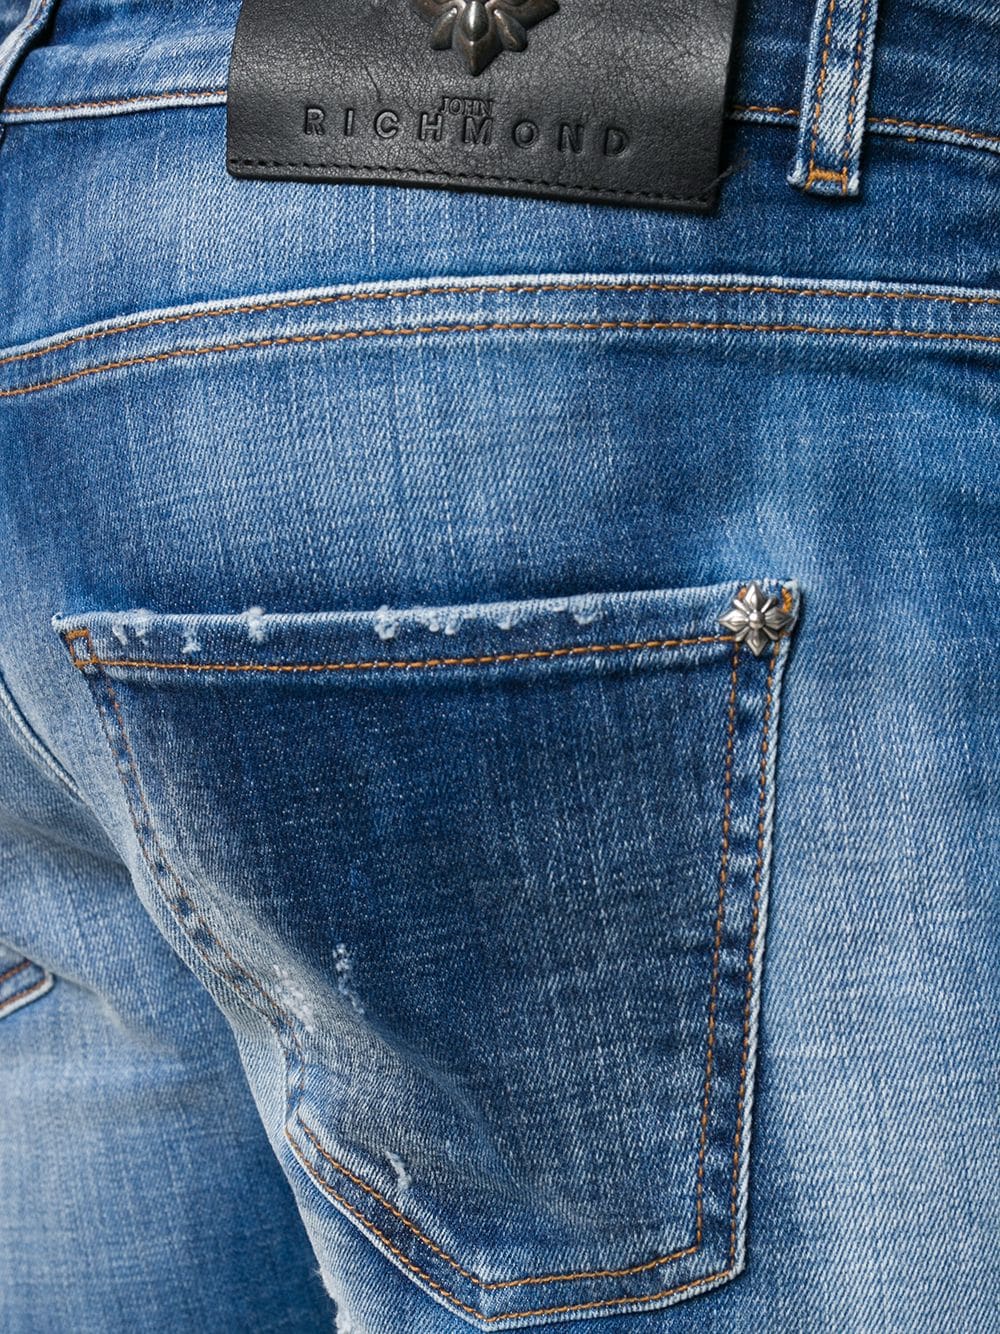 фото John richmond зауженные джинсы mick средней посадки